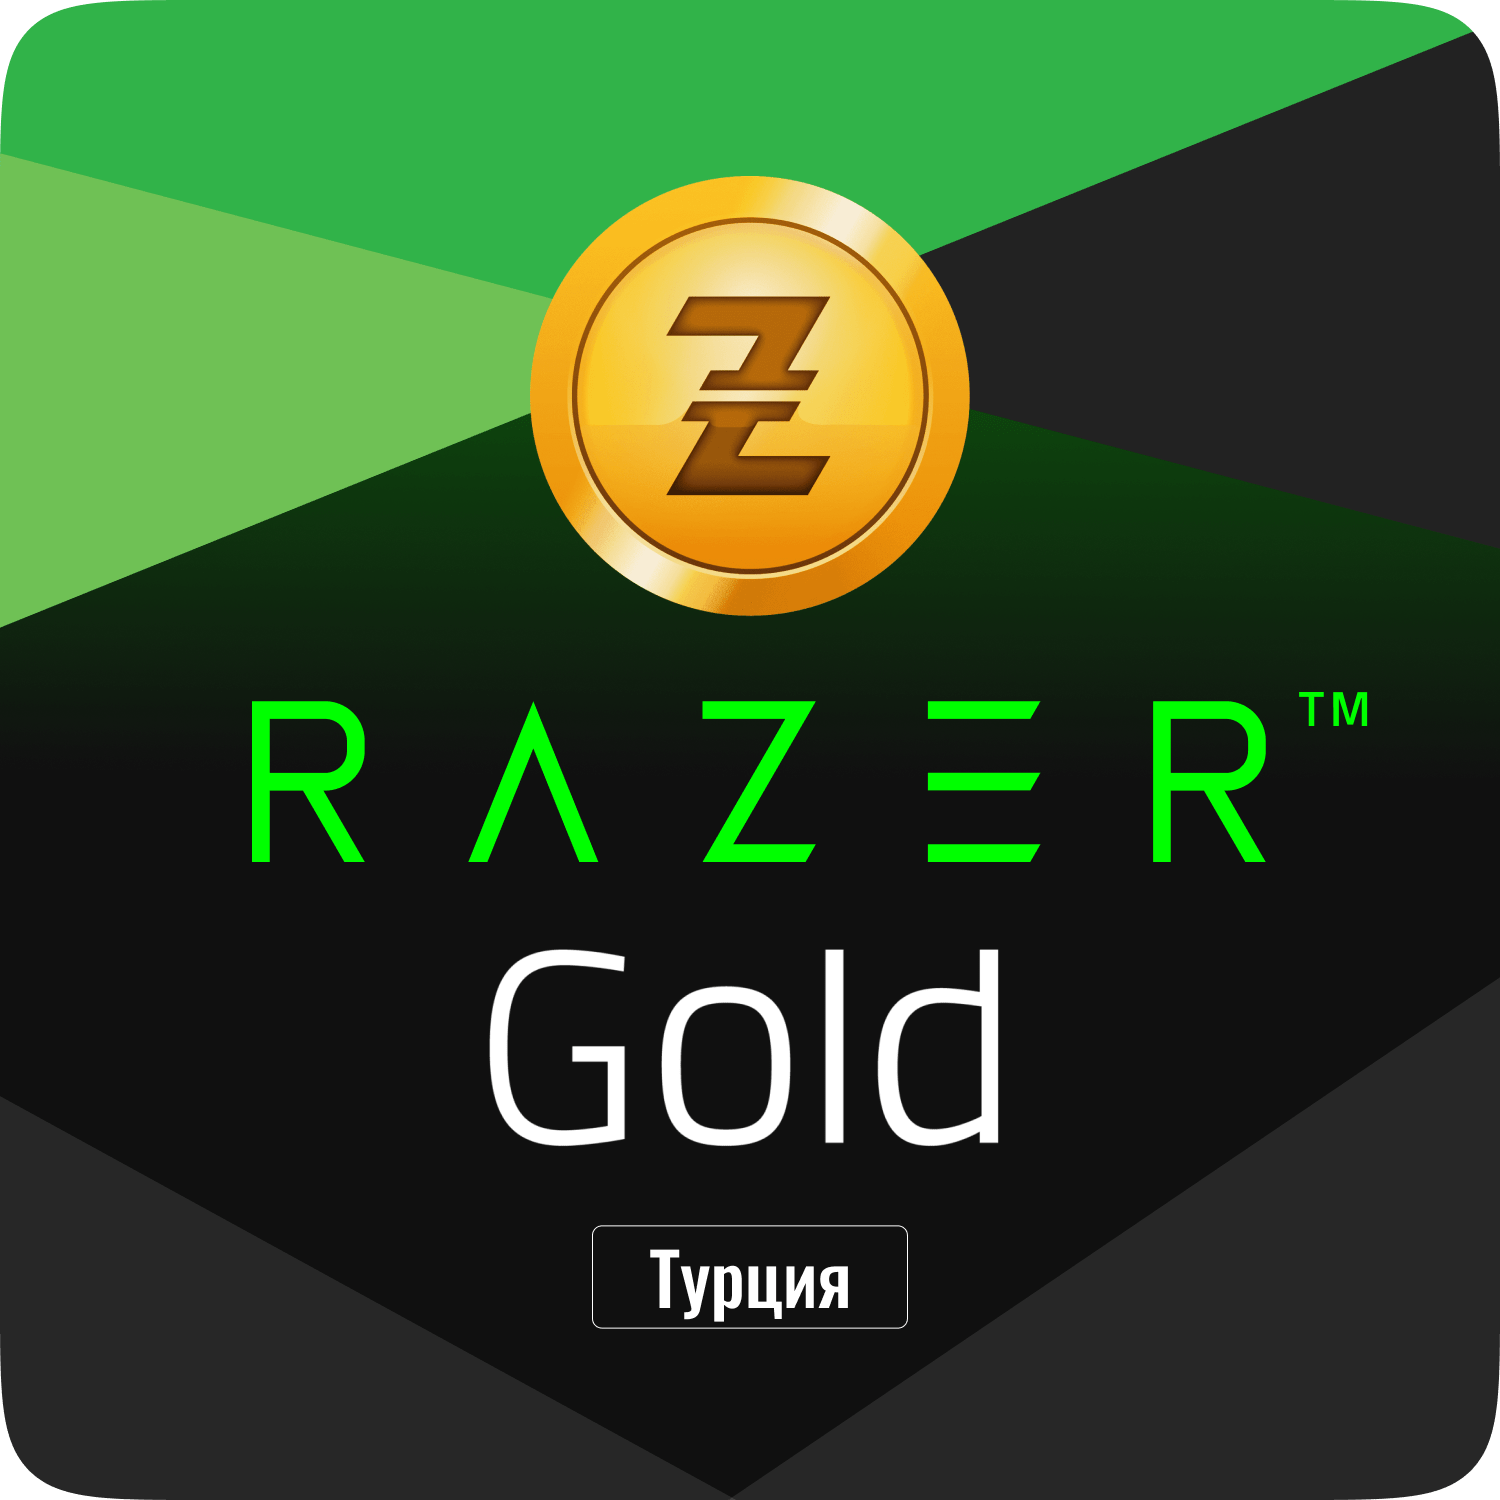 Подарочная карта Razer Gold PIN (Турция) - 100 лир